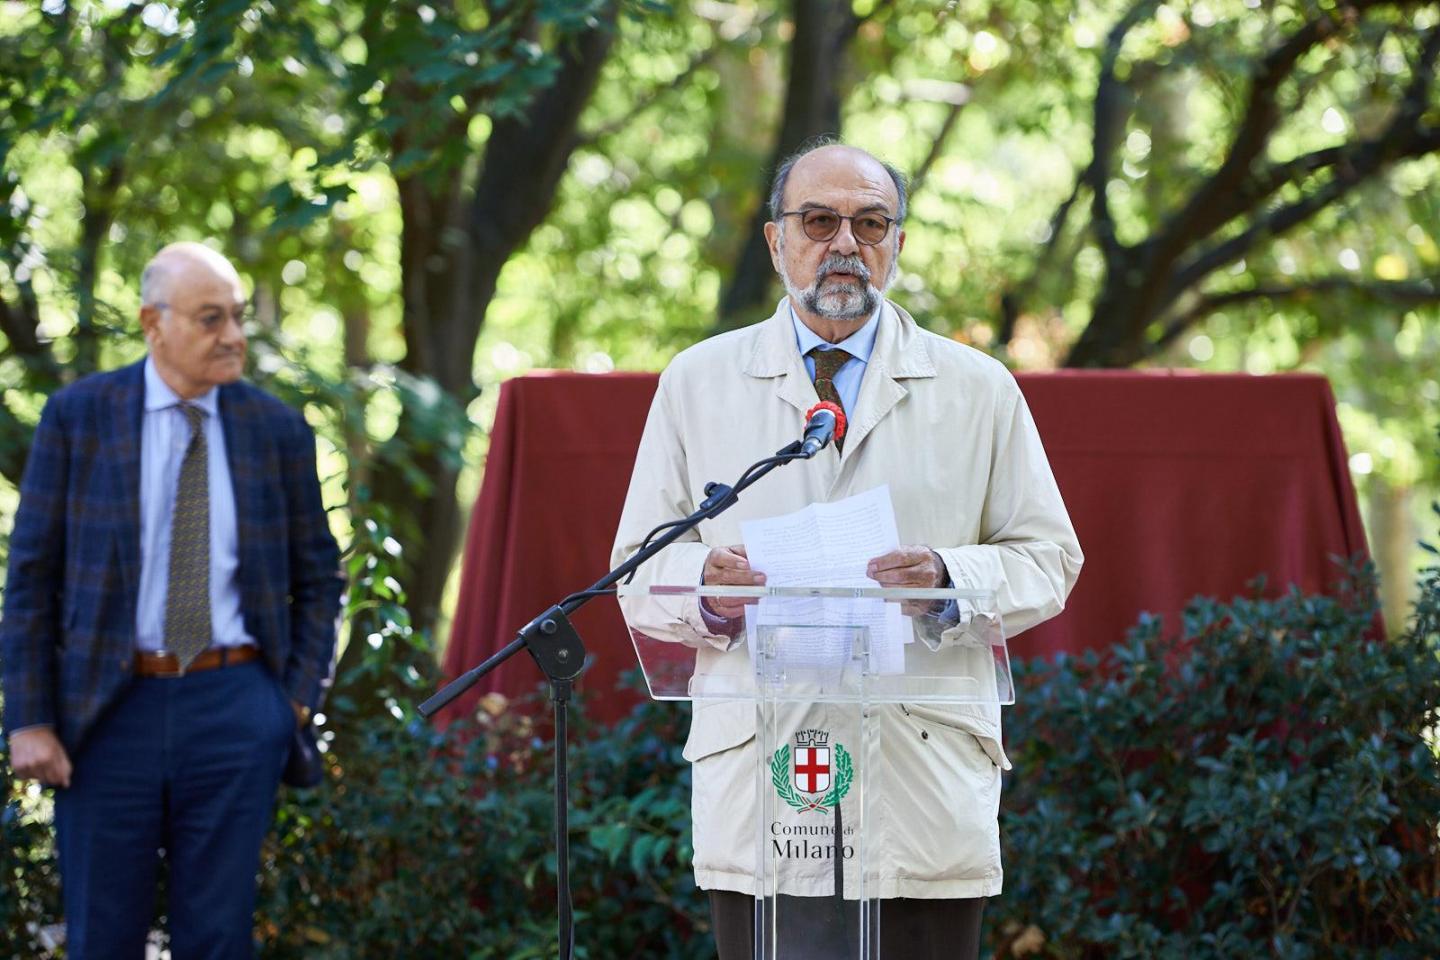 Giorgio Mortara, Ucei vice president